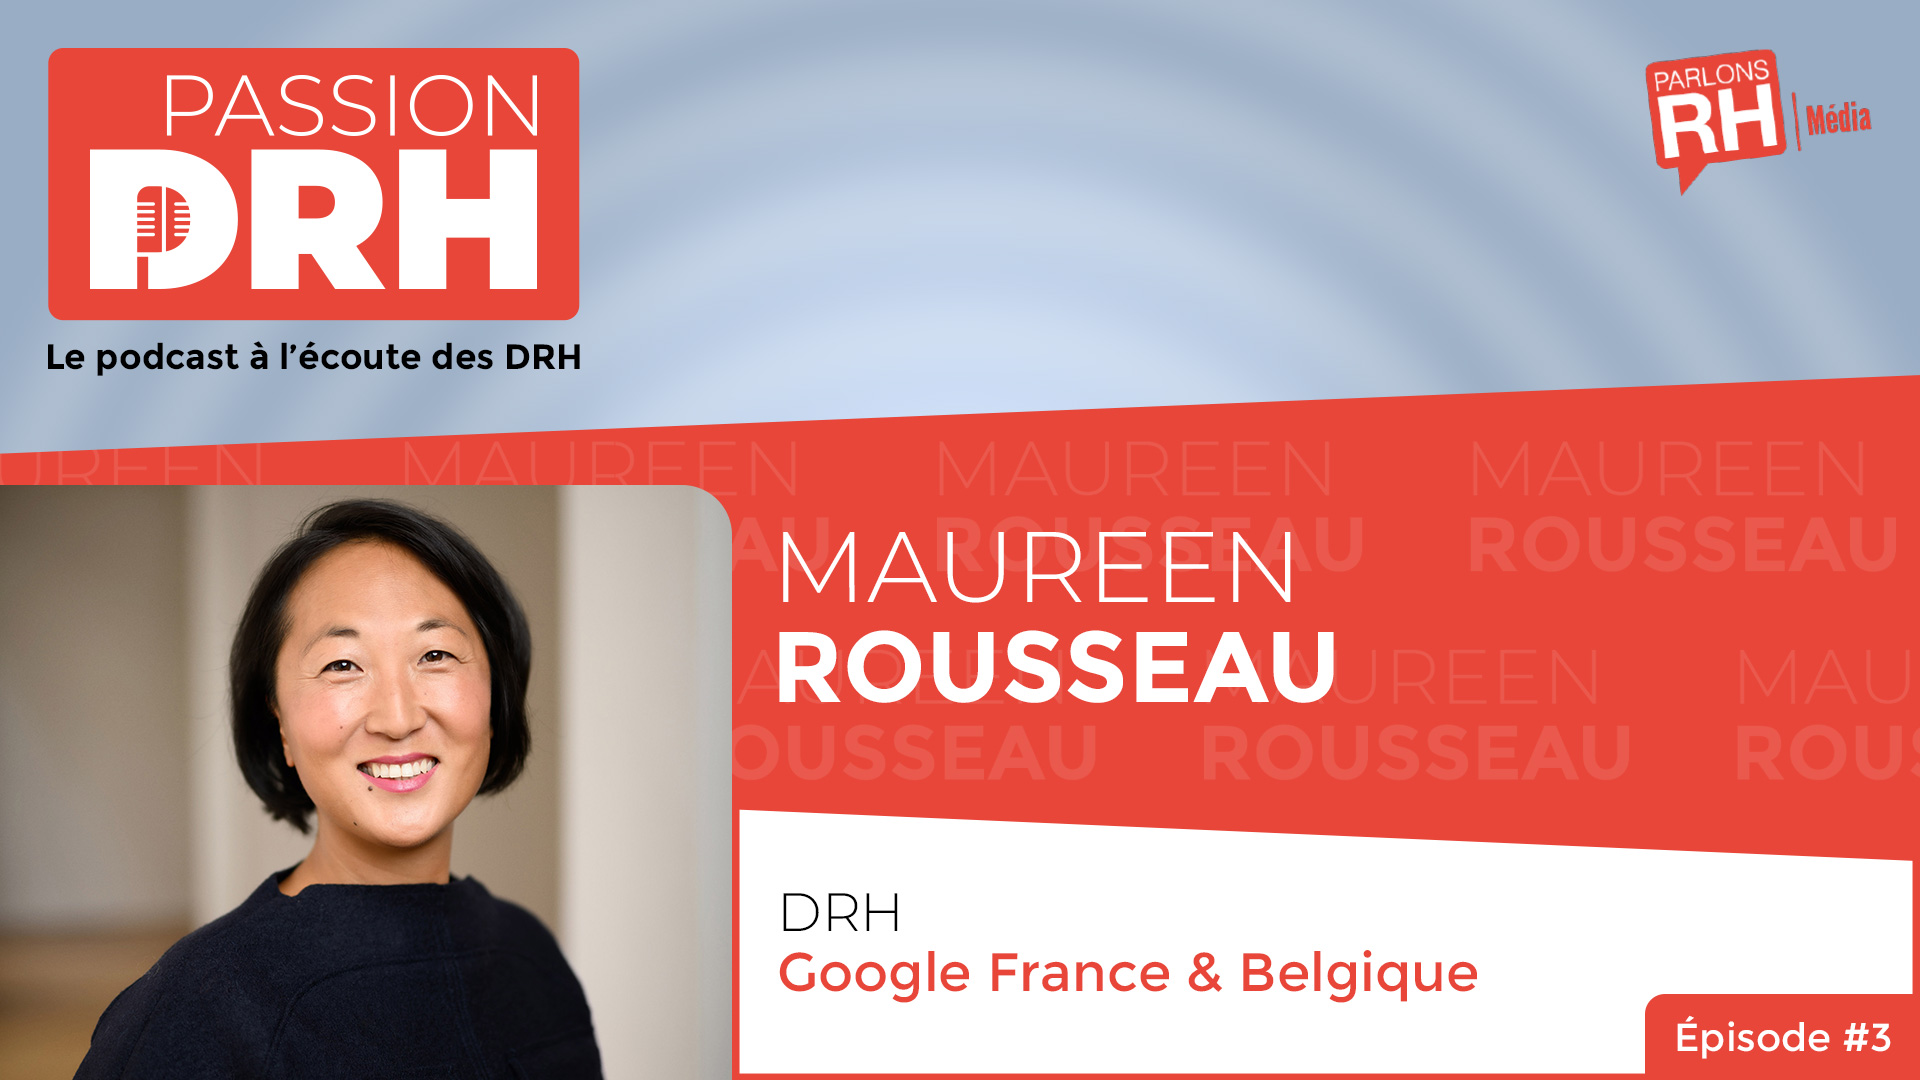 Visuel du podcast PASSION DRH, épisode 3 : Maureen Rousseau, Google France & Belgique